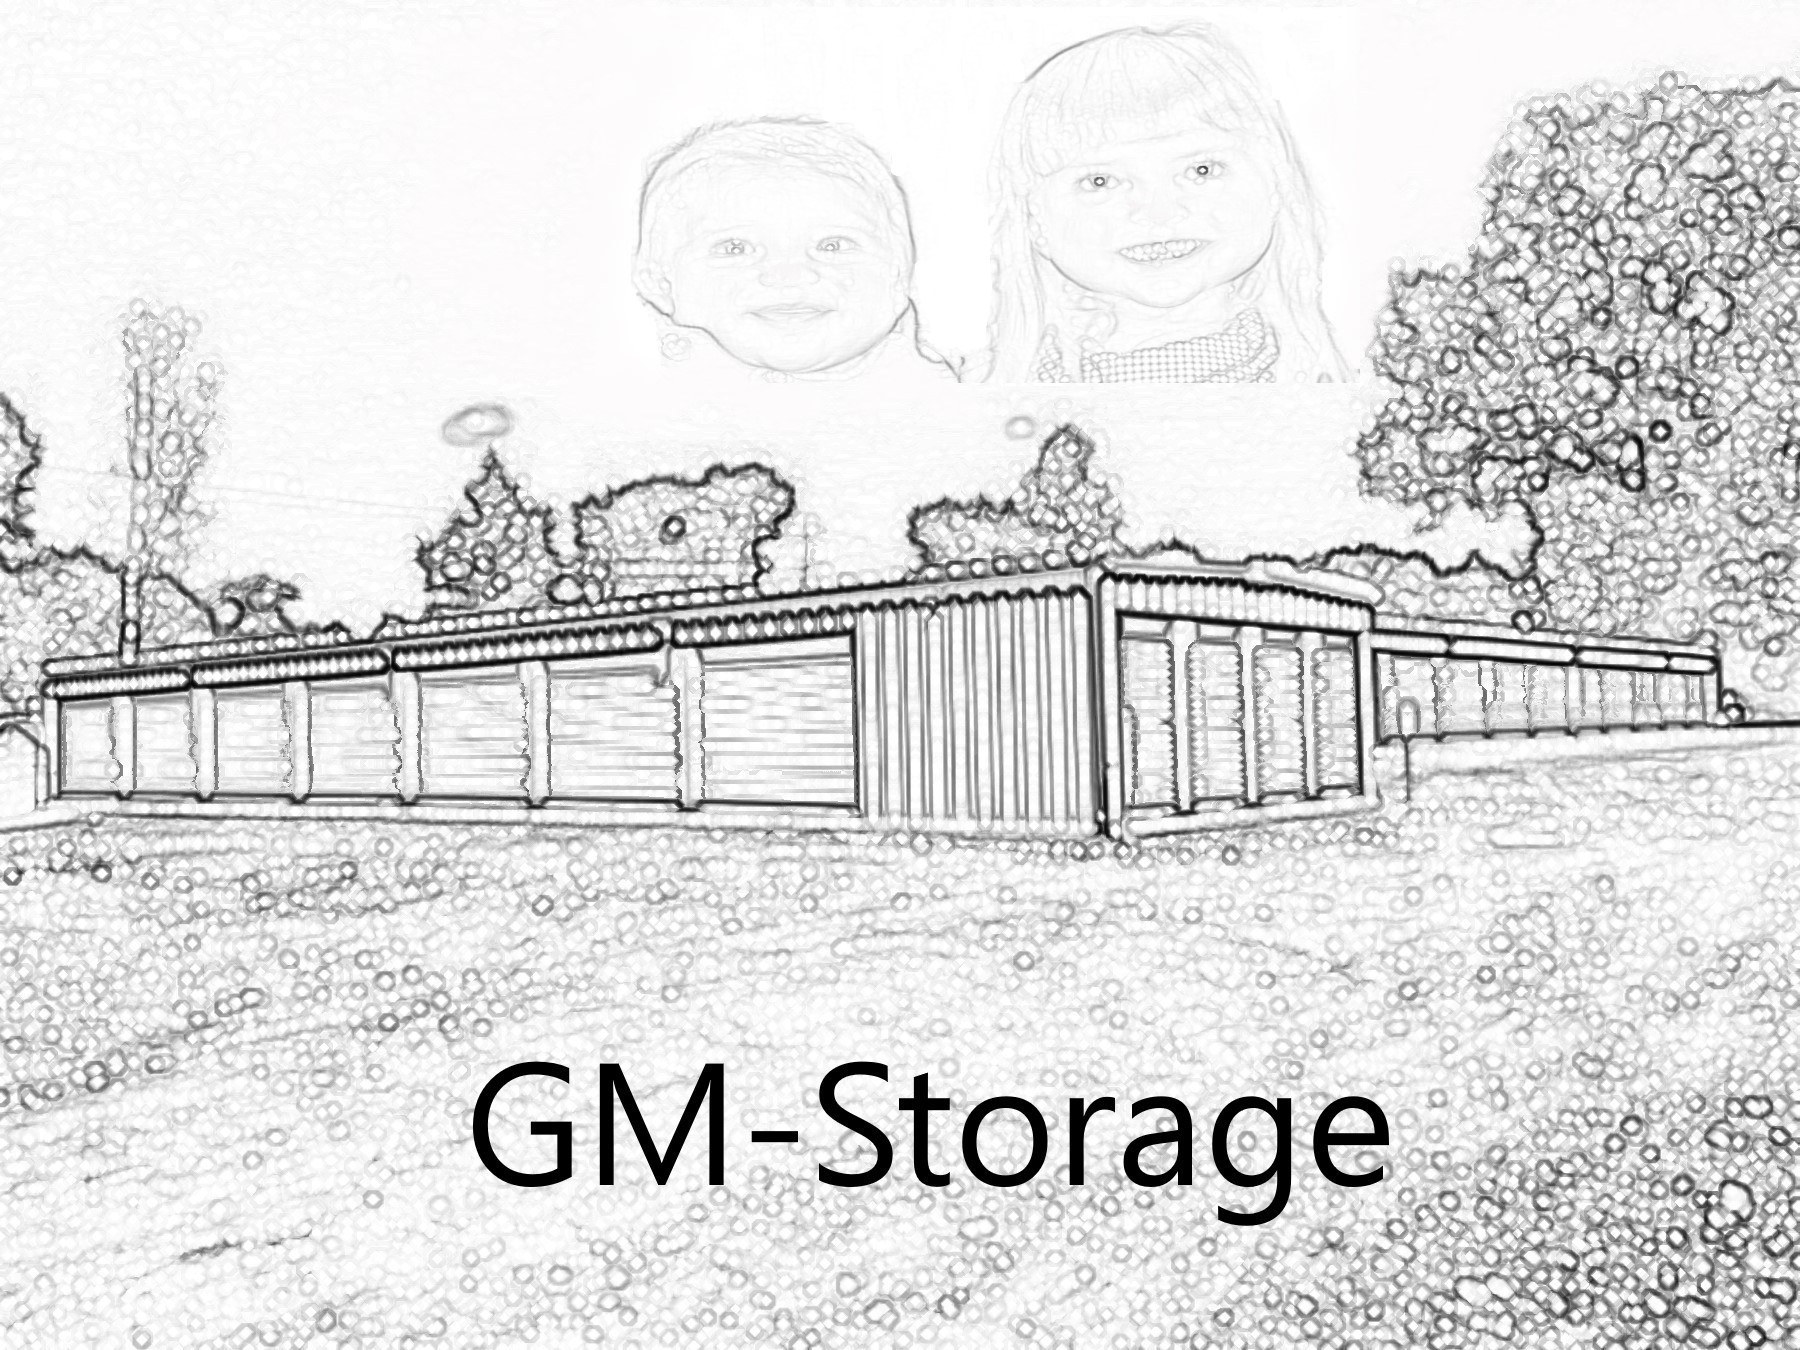 GM Storage